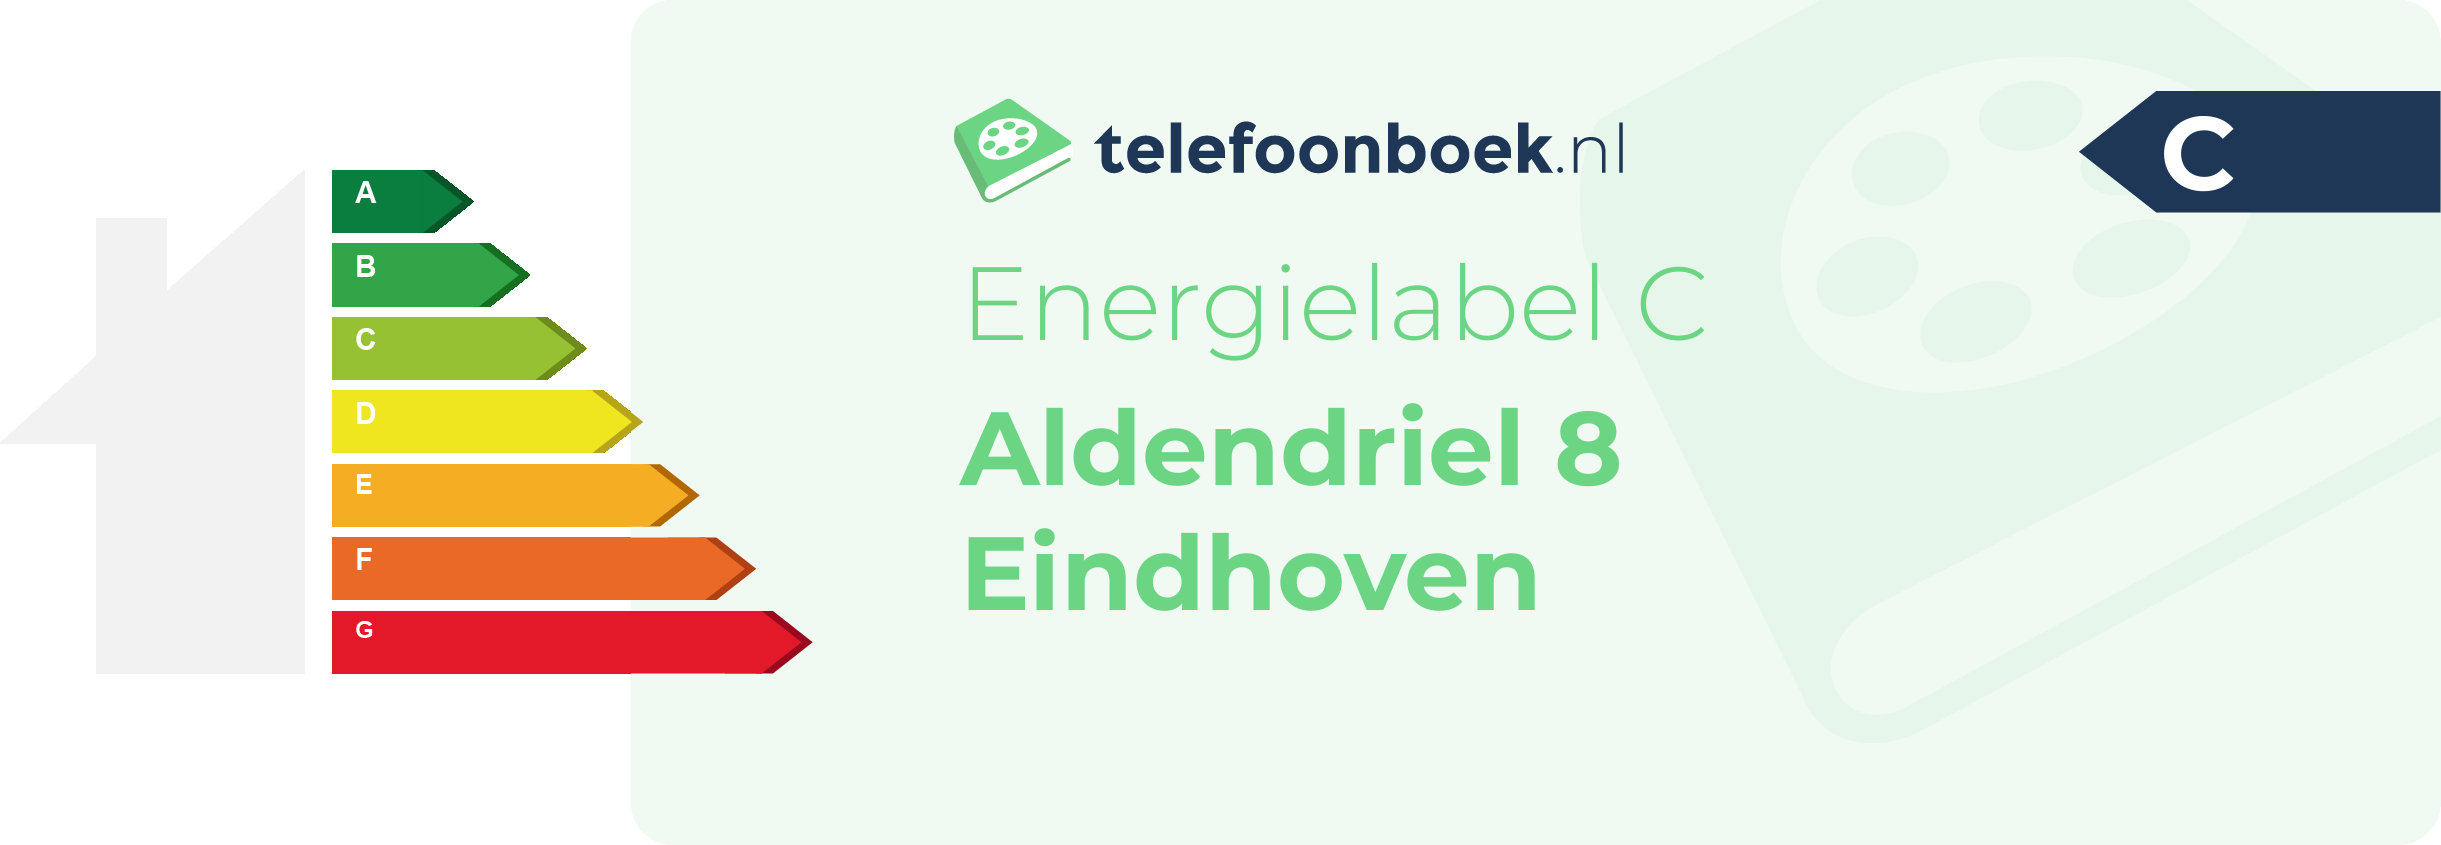 Energielabel Aldendriel 8 Eindhoven